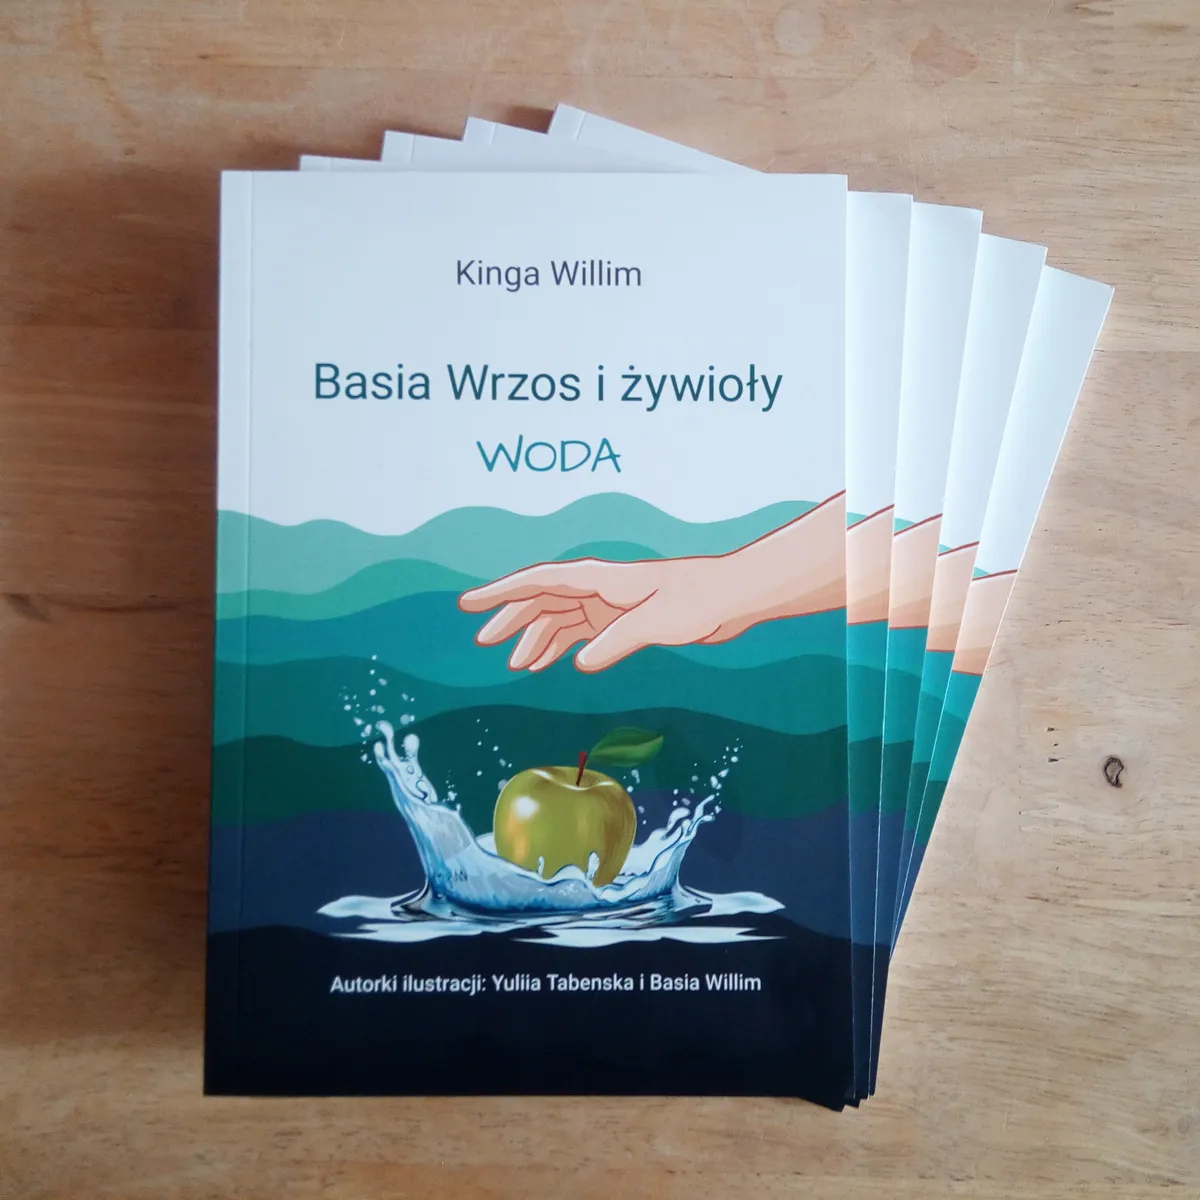 Okładka książki "Basia Wrzos i żywioły, woda" Kingi Willim